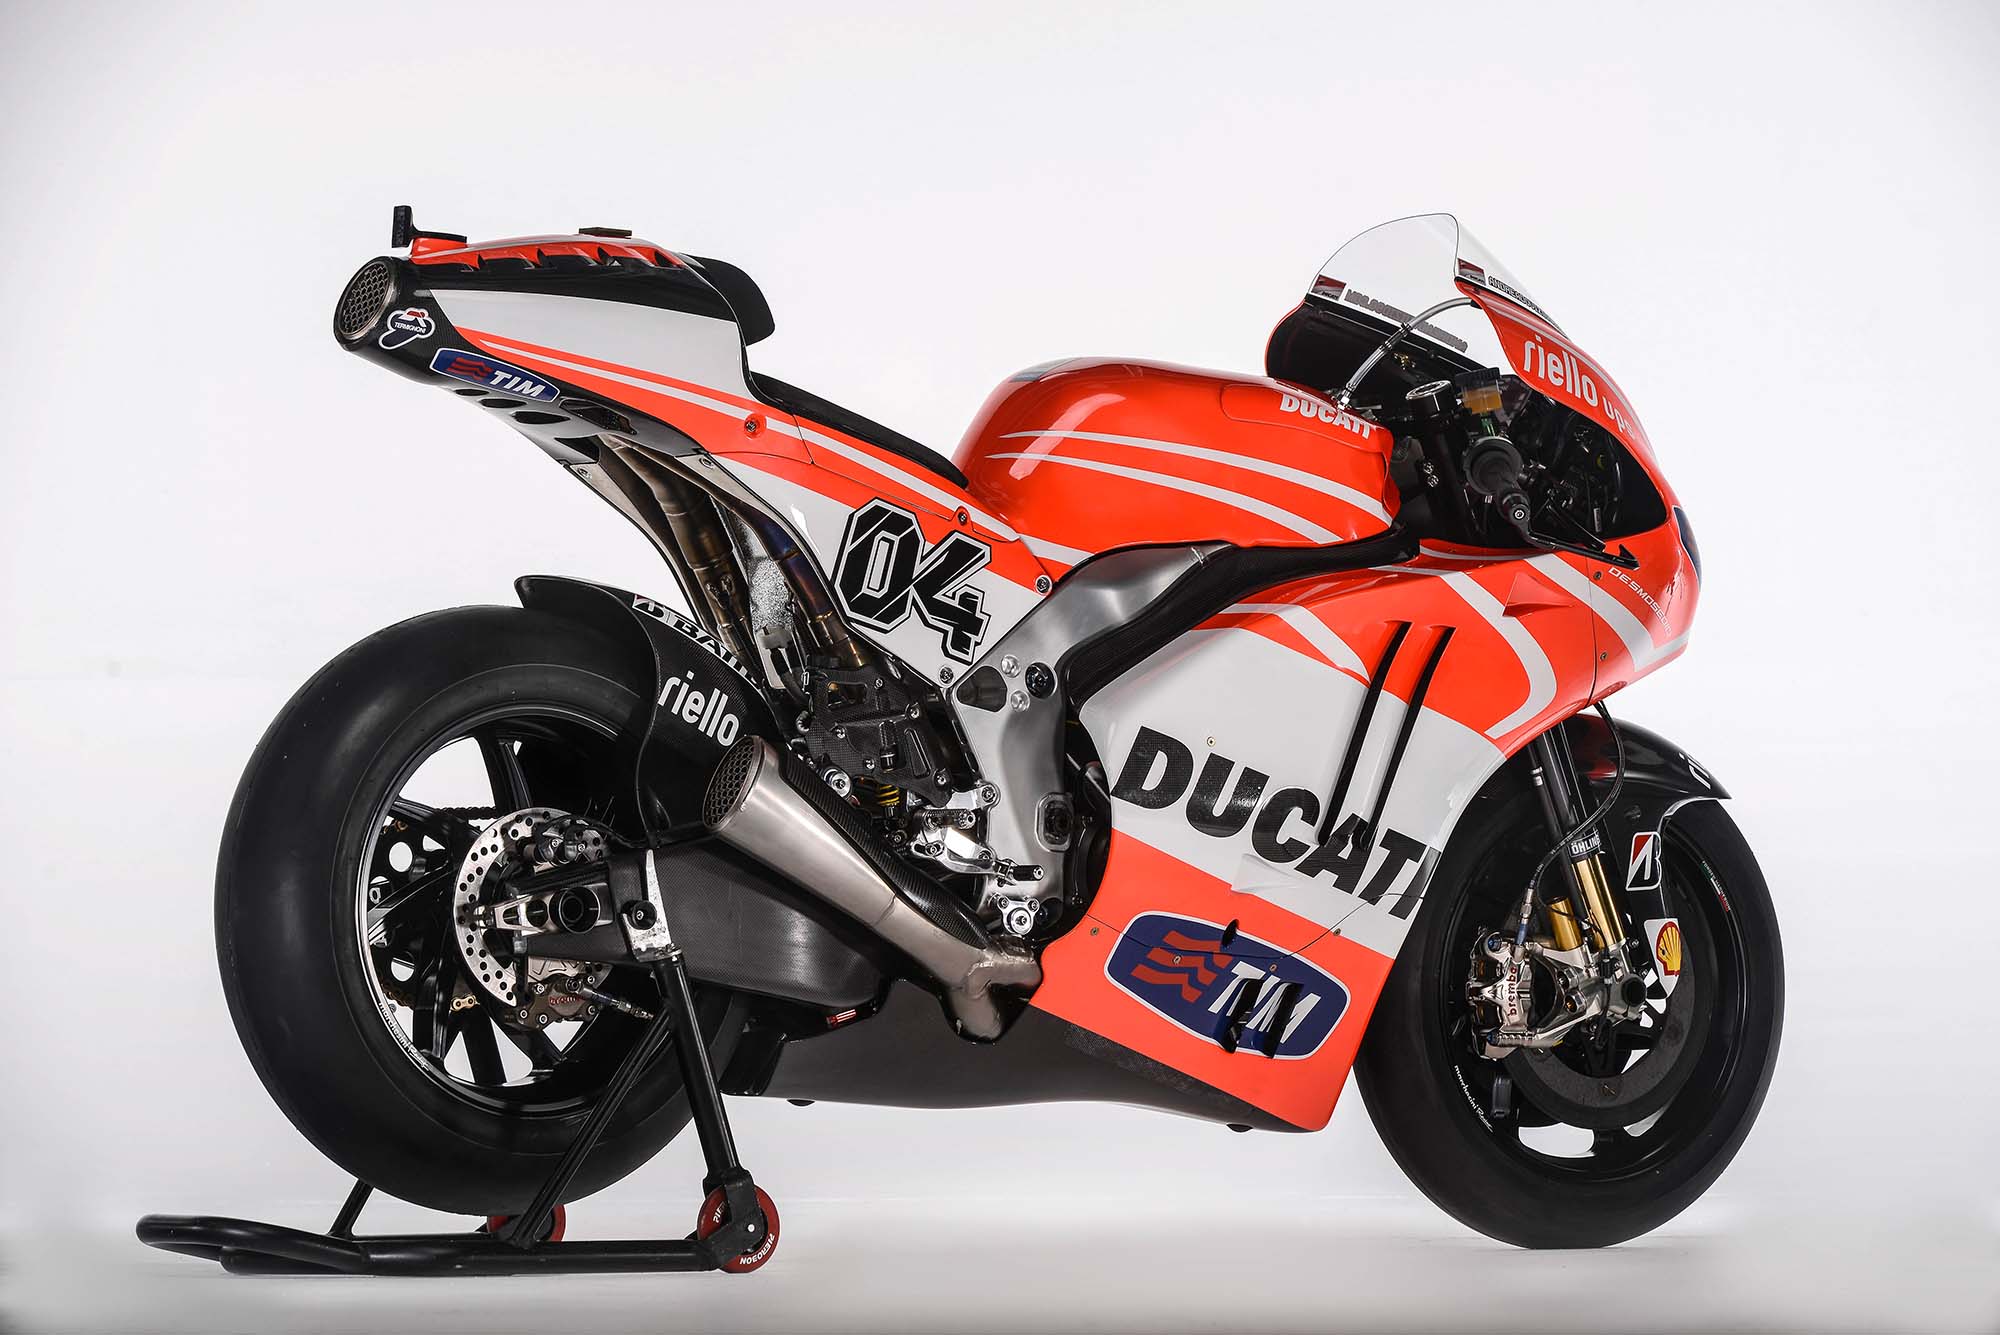 MotoGP, Foto Motor Ducati Desmosedici GP13: Spesifikasi dan Foto Motor Ducati Desmosedici GP13